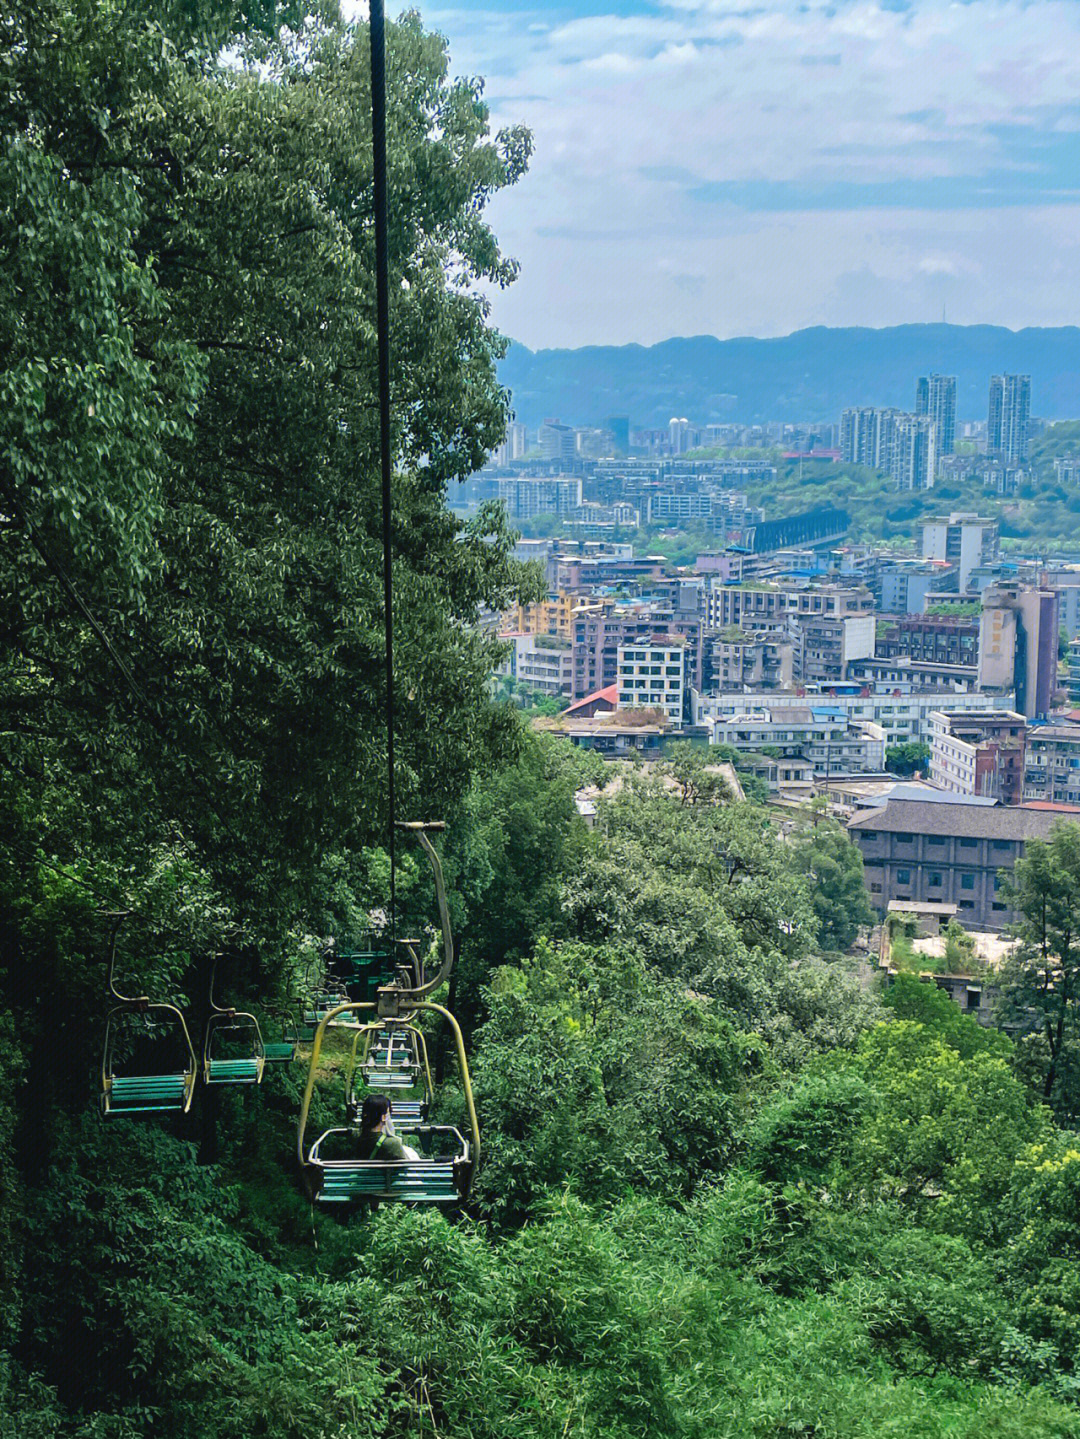 来宜宾总得去一趟翠屏公园吧07坐缆车超安逸